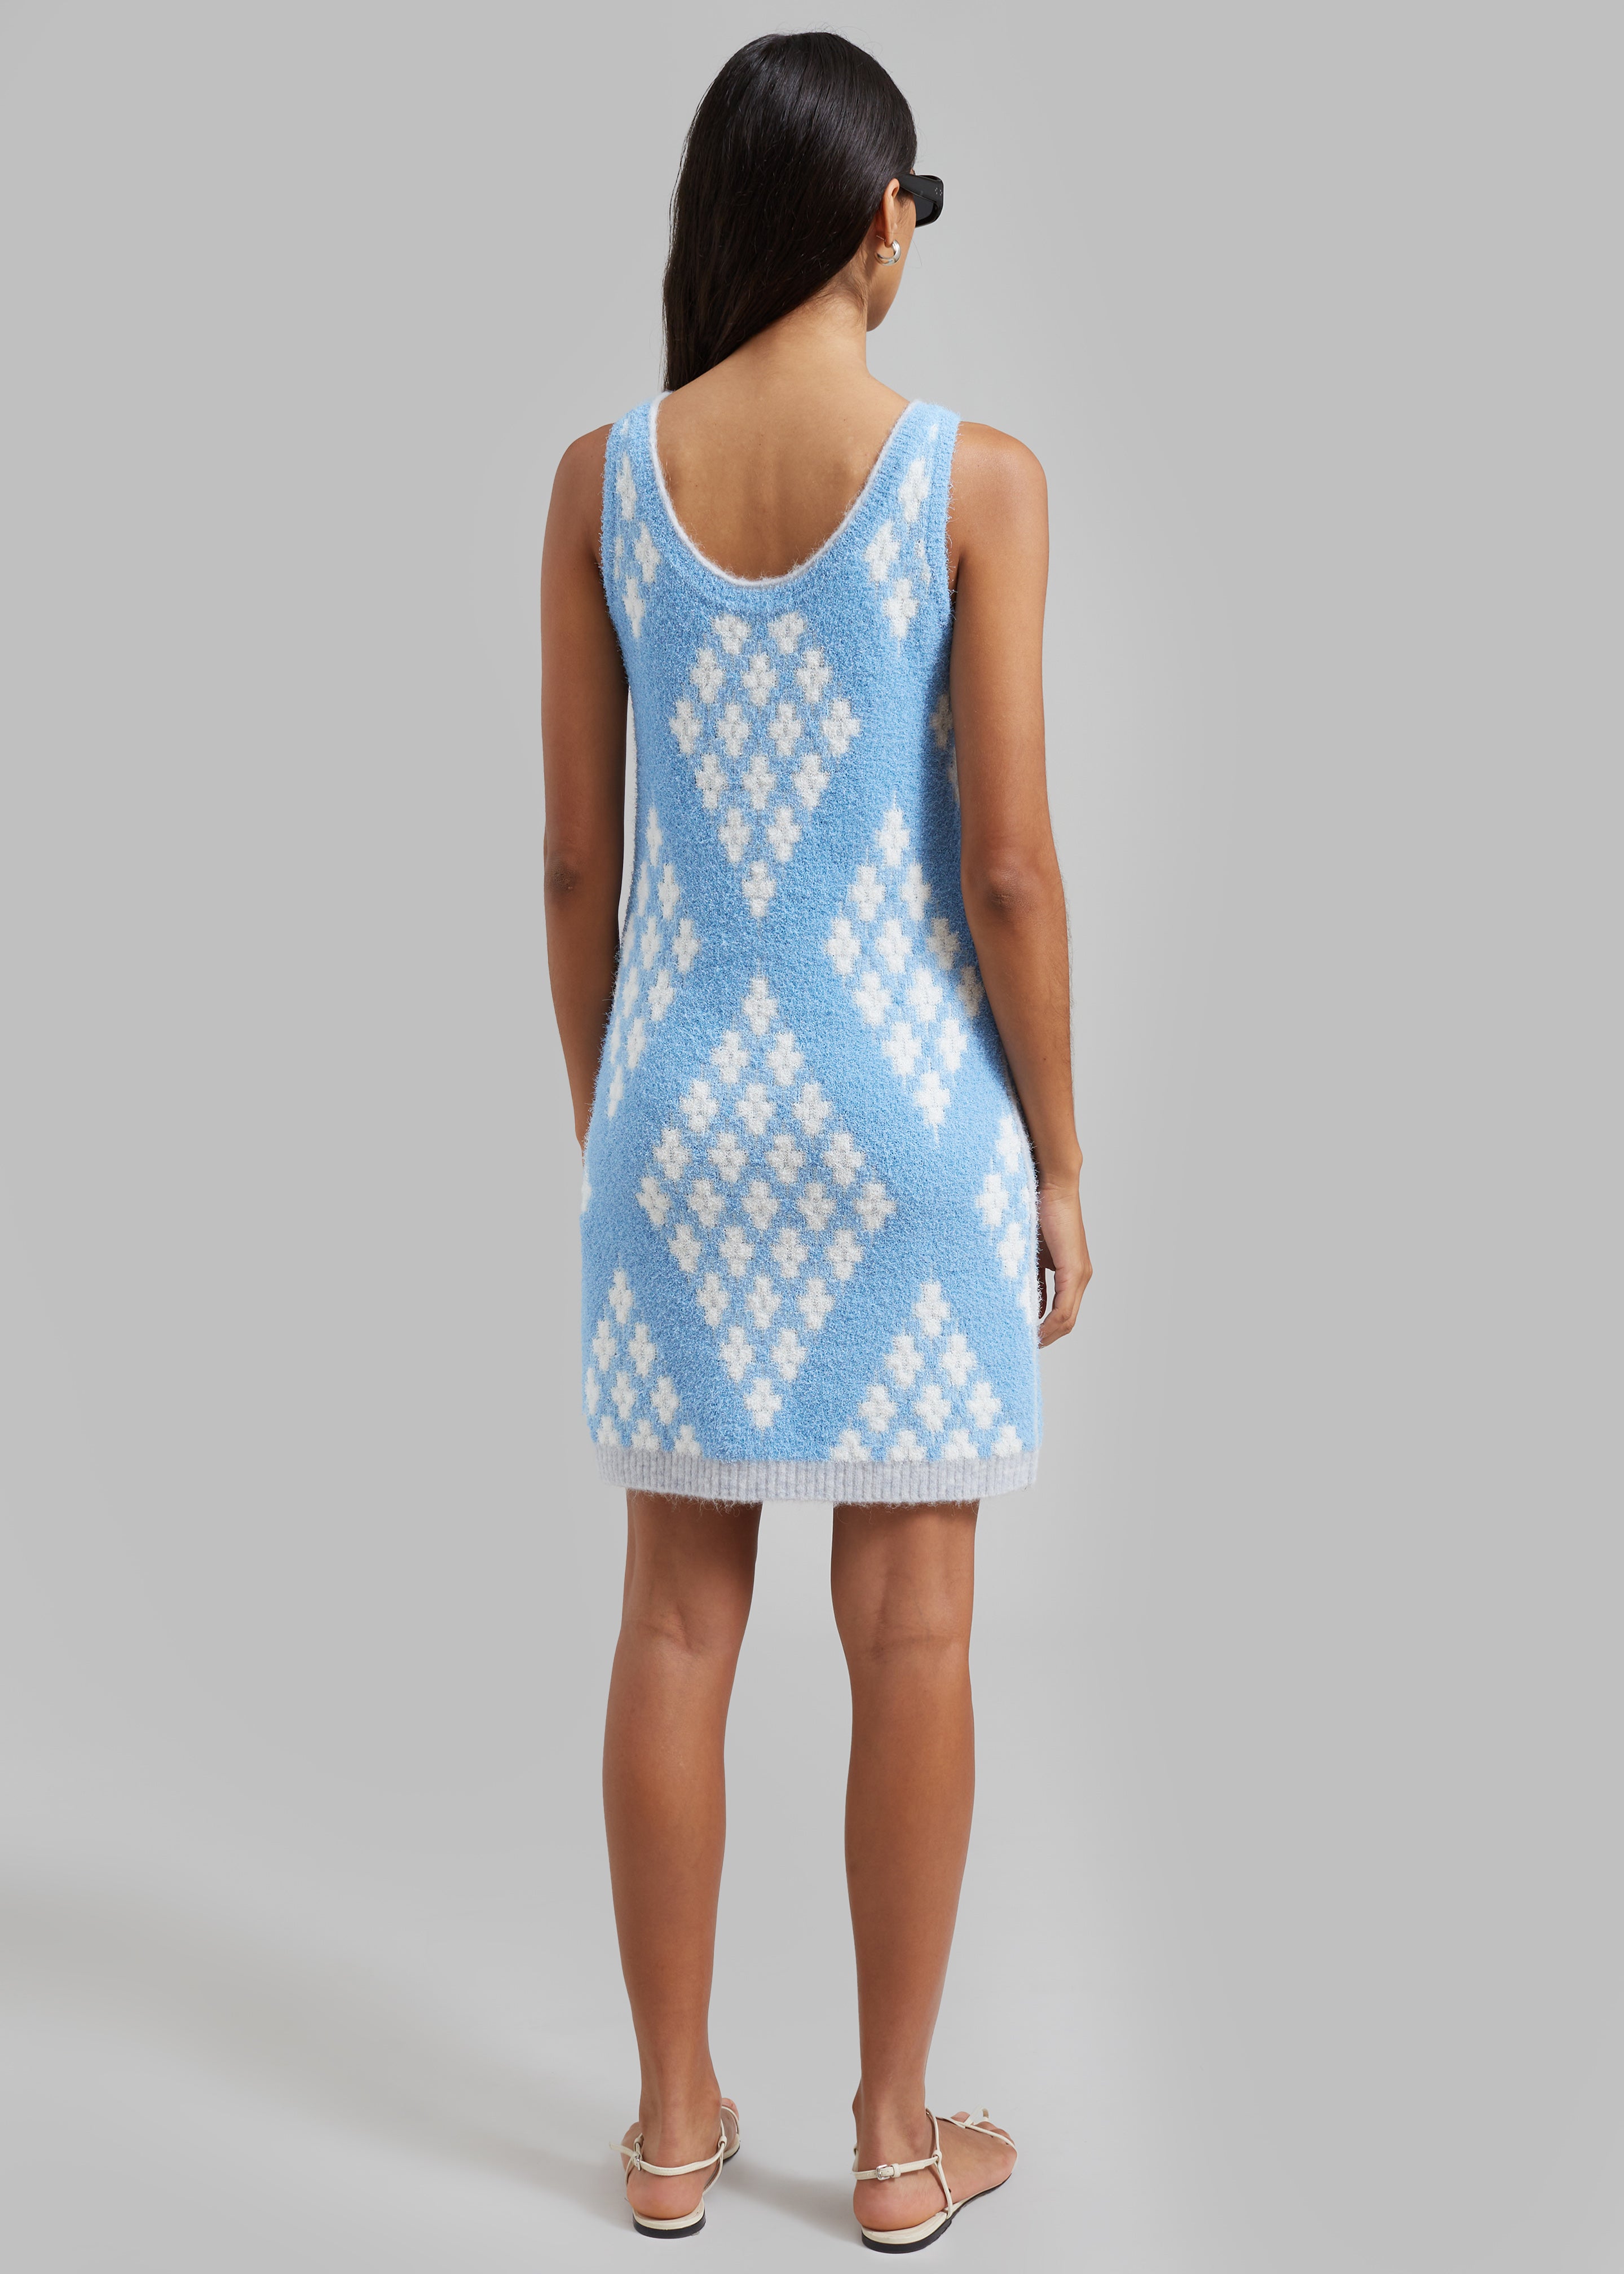 3.1 Phillip Lim Argyle Jacquard Sleeveless Mini Dress - Hudson Blue/Multi - 6